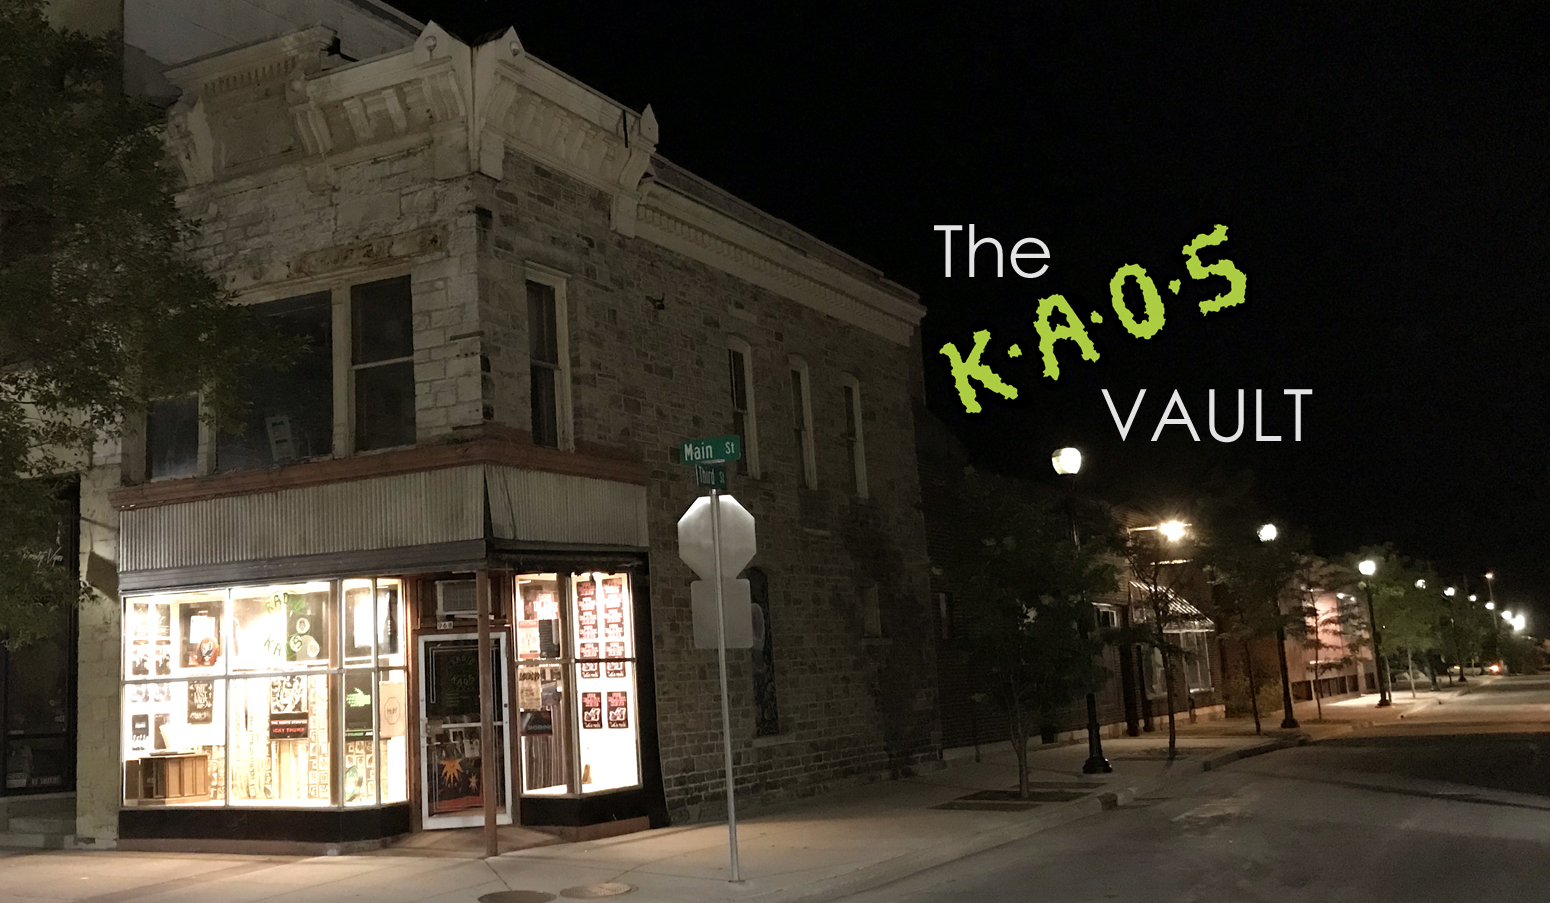 The KAOS Vault